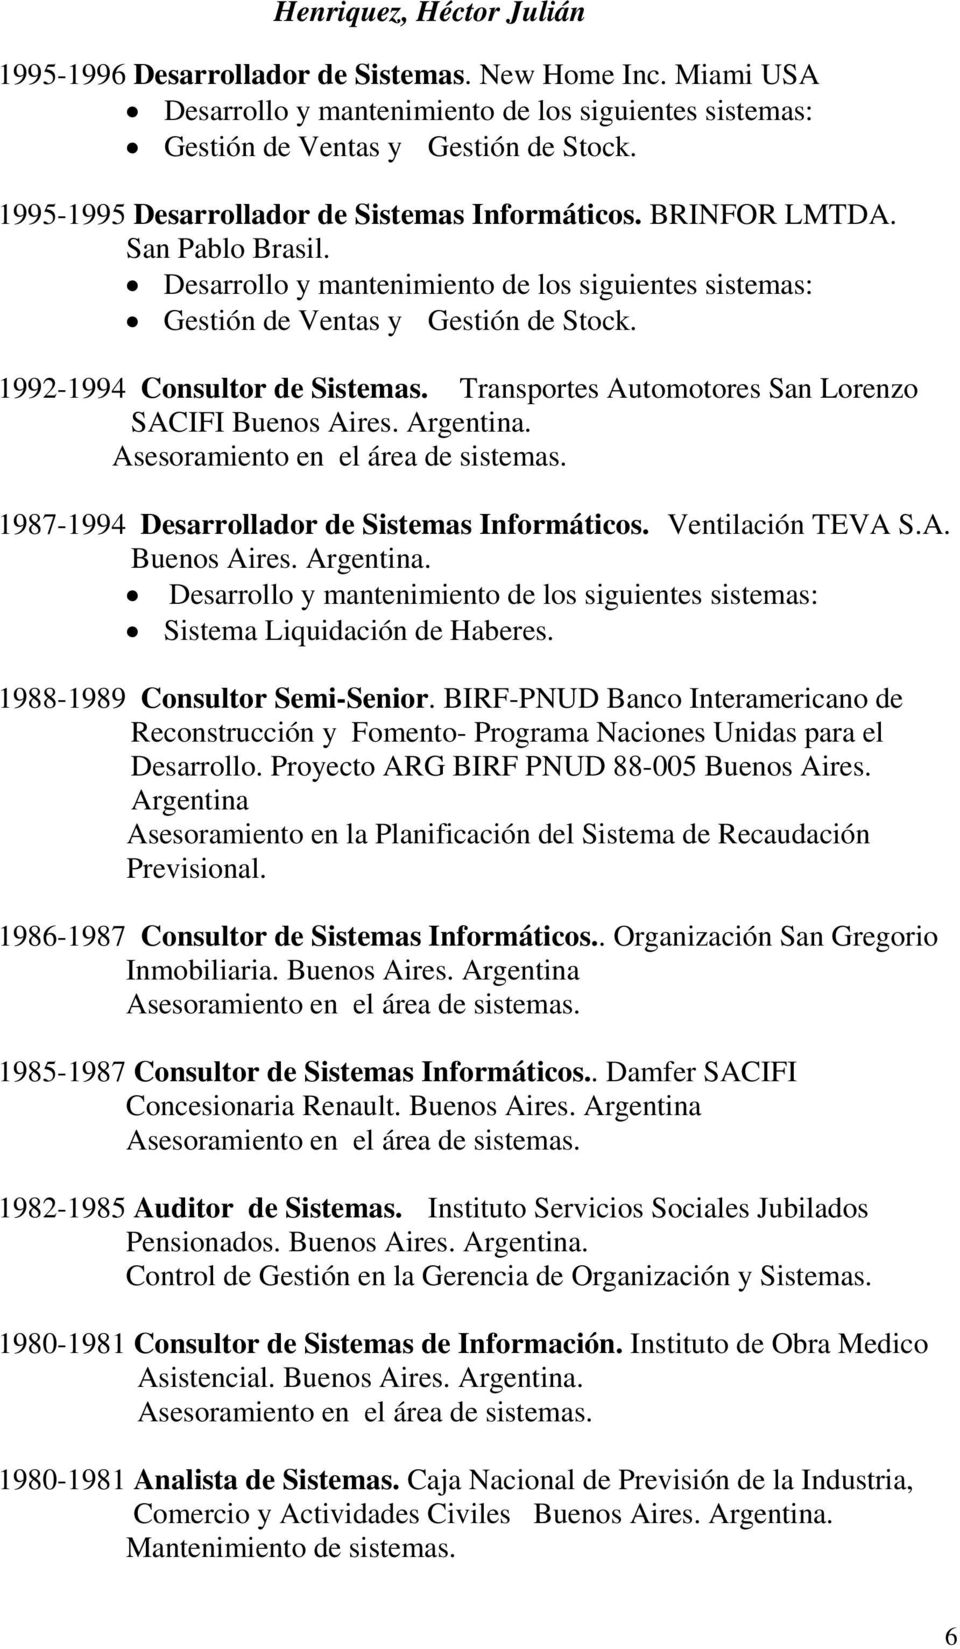 1992-1994 Consultor de Sistemas. Transportes Automotores San Lorenzo SACIFI 1987-1994 Desarrollador de Sistemas Informáticos. Ventilación TEVA S.A. Desarrollo y mantenimiento de los siguientes sistemas: Sistema Liquidación de Haberes.